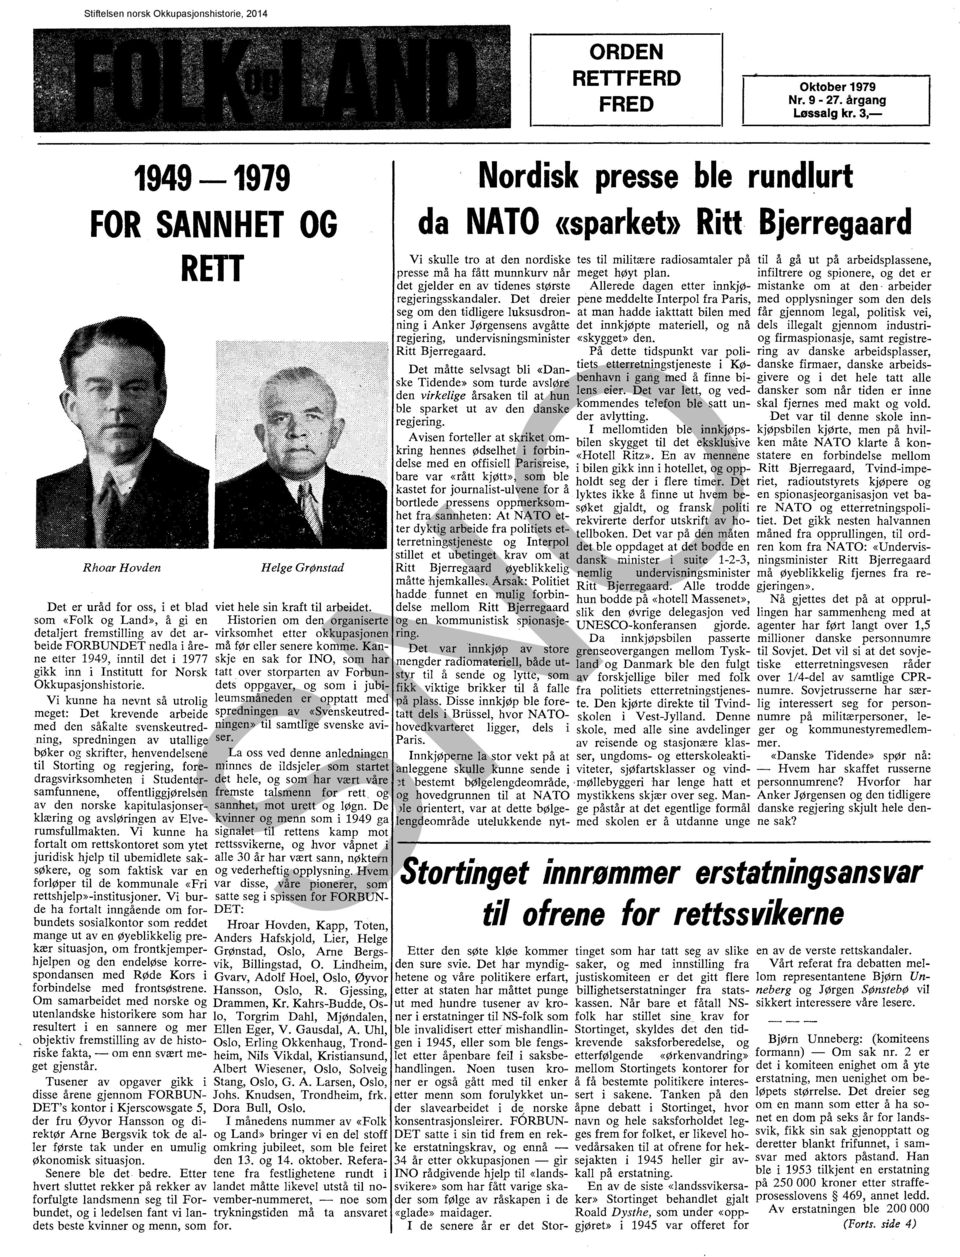 Kanne etter 1949, inntil det i 1977 skje en sak for INO, som har gikk inn i Institutt for Norsk tatt. over storparten av Forbun Okkupasjonshistorie.